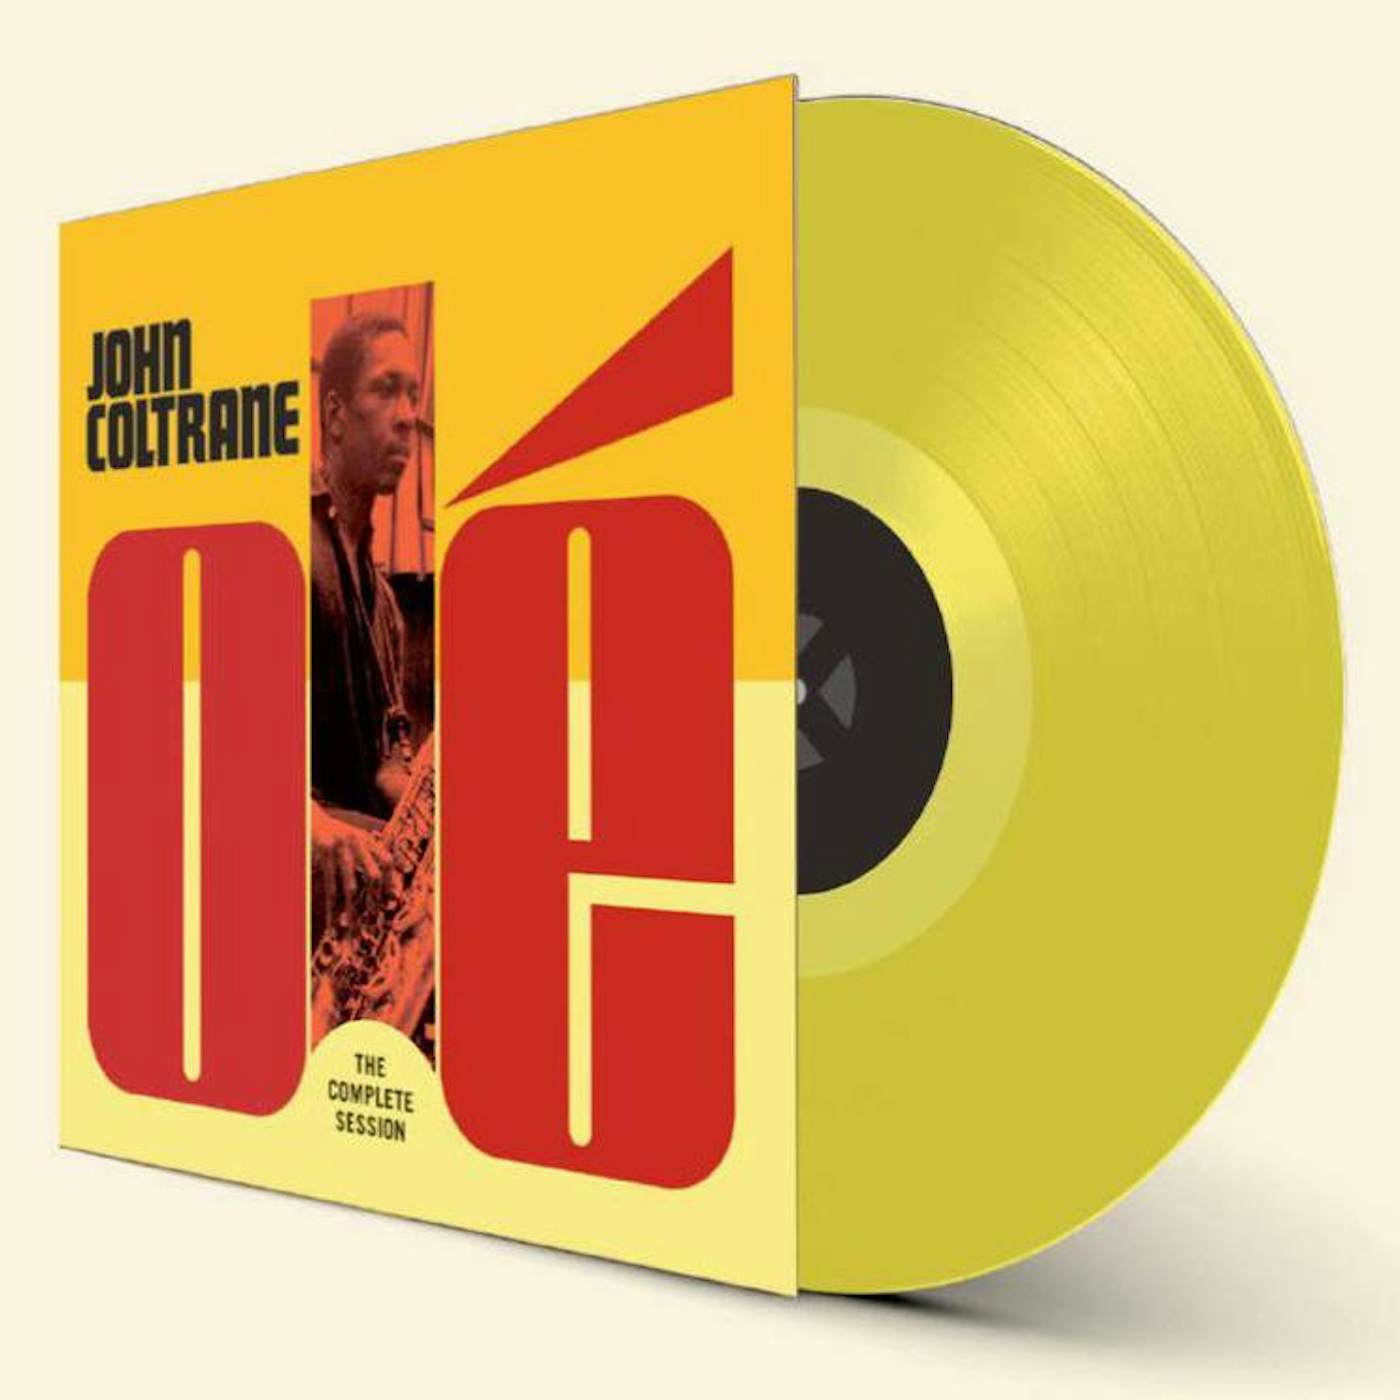 John Coltrane LP Vinyl Record - Ole Coltrane - The Complete Session